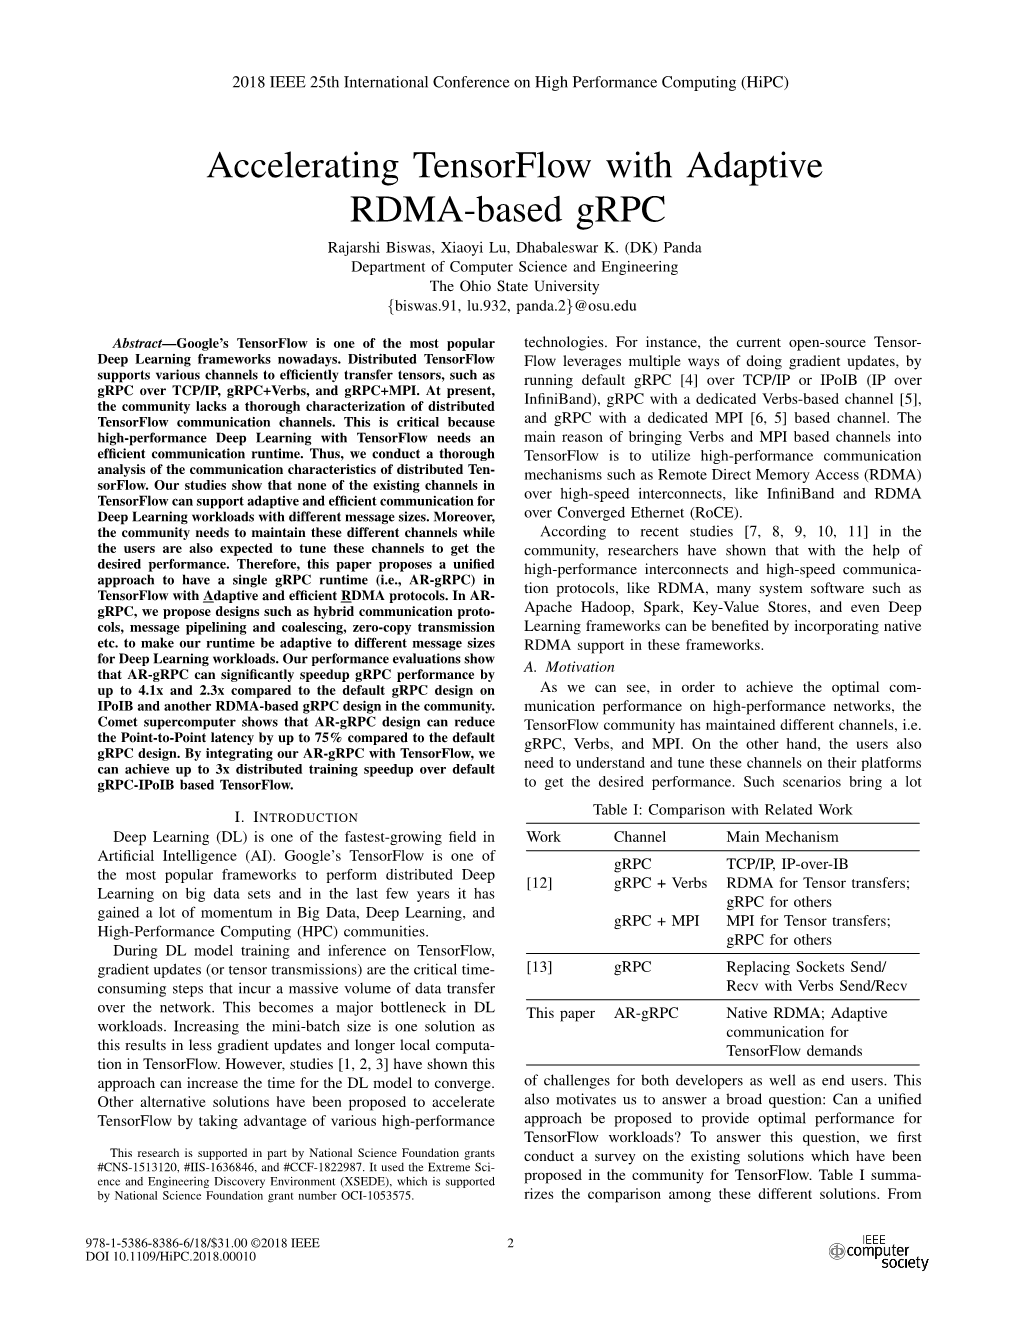 Accelerating Tensorflow with Adaptive RDMA-Based Grpc Rajarshi Biswas, Xiaoyi Lu, Dhabaleswar K